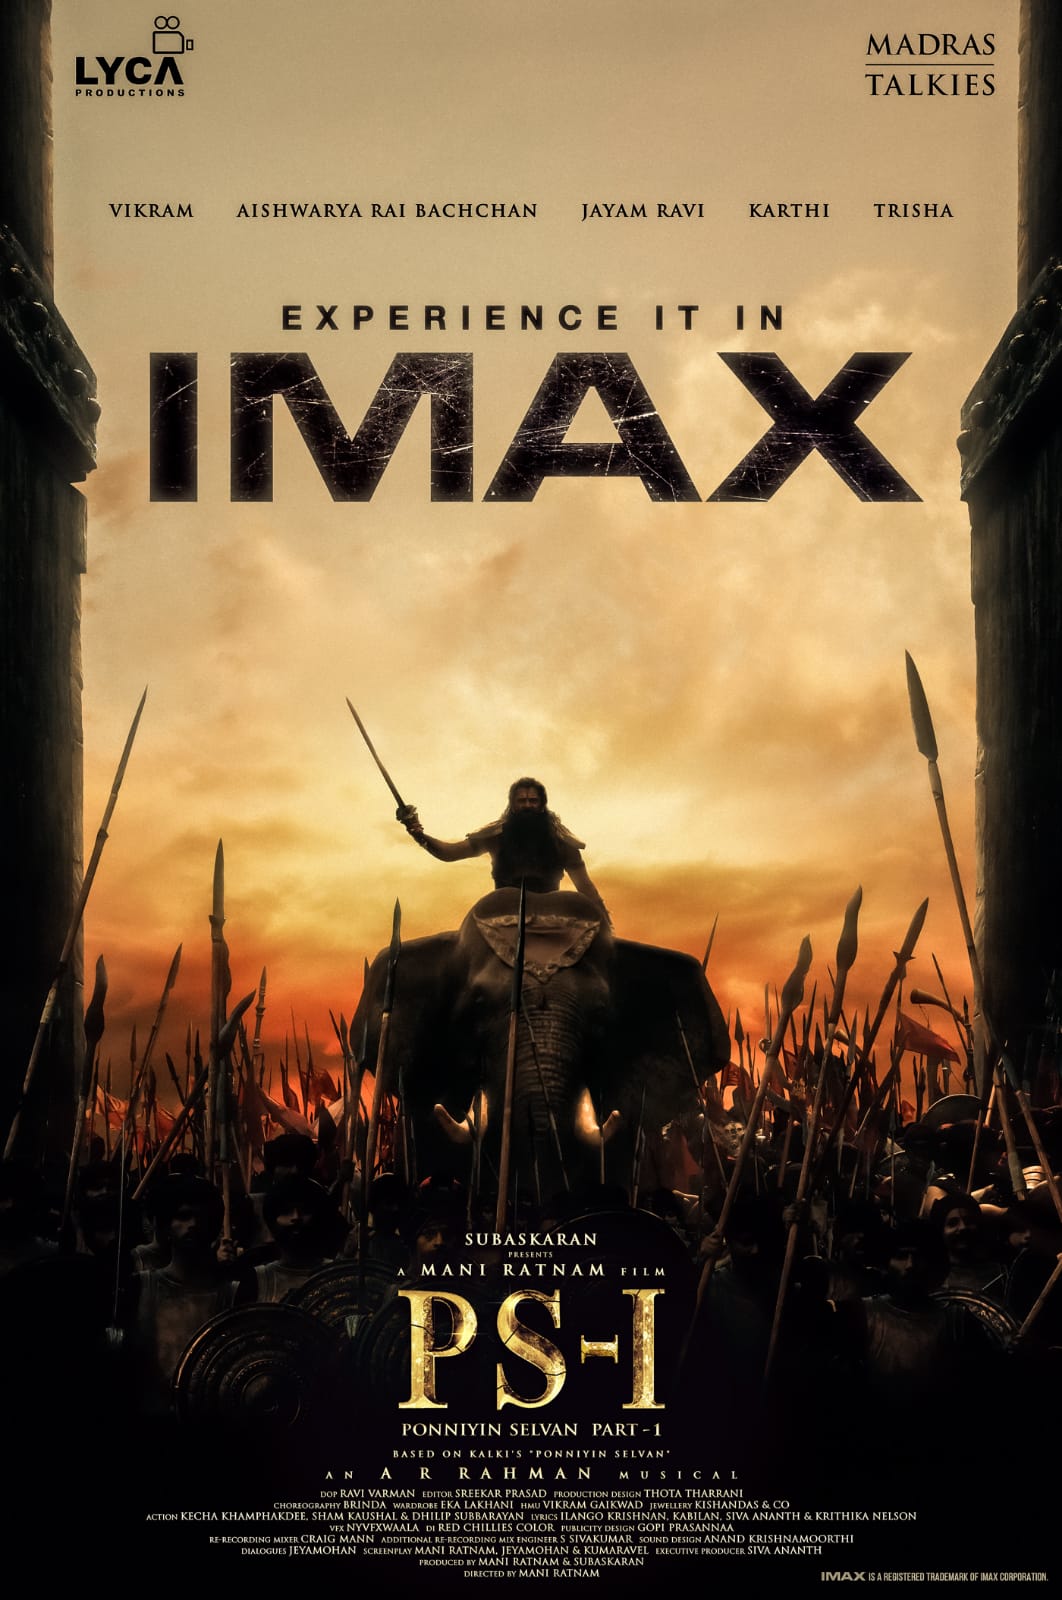 Maniratnam Vikram Karthi Ponniyin Selvan Movie in IMAX